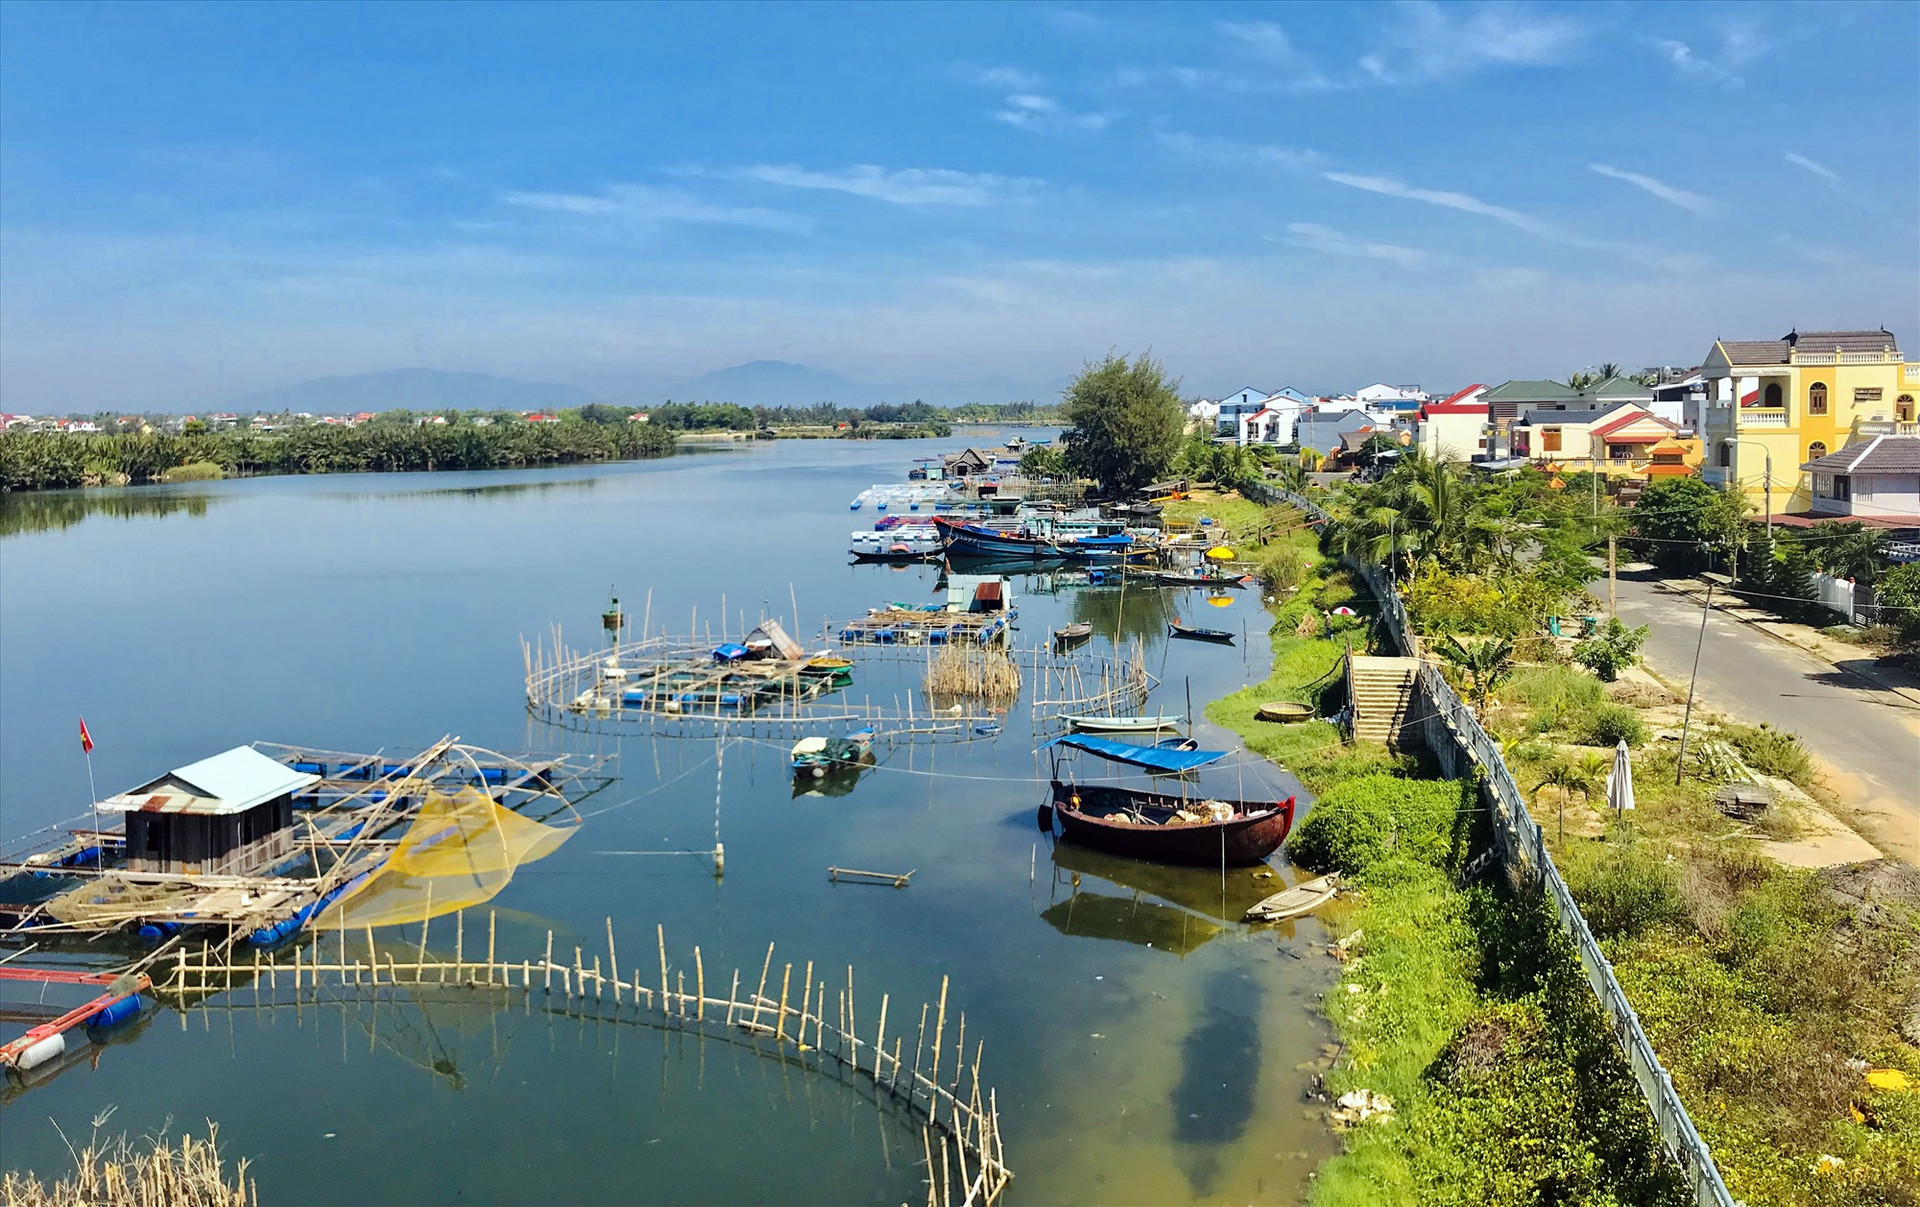 Sông Cổ Cò khi được khơi thông sẽ là một điểm nhấn lớn trong liên kết du lịch Quảng Nam - Đà Nẵng. Ảnh: P.Q